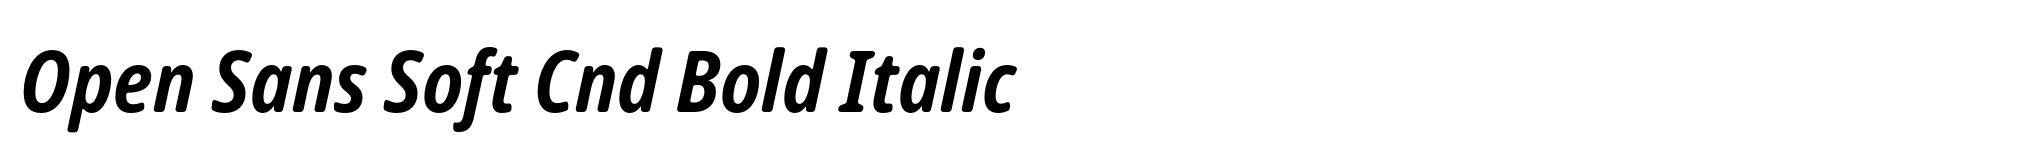 Open Sans Soft Cnd Bold Italic image